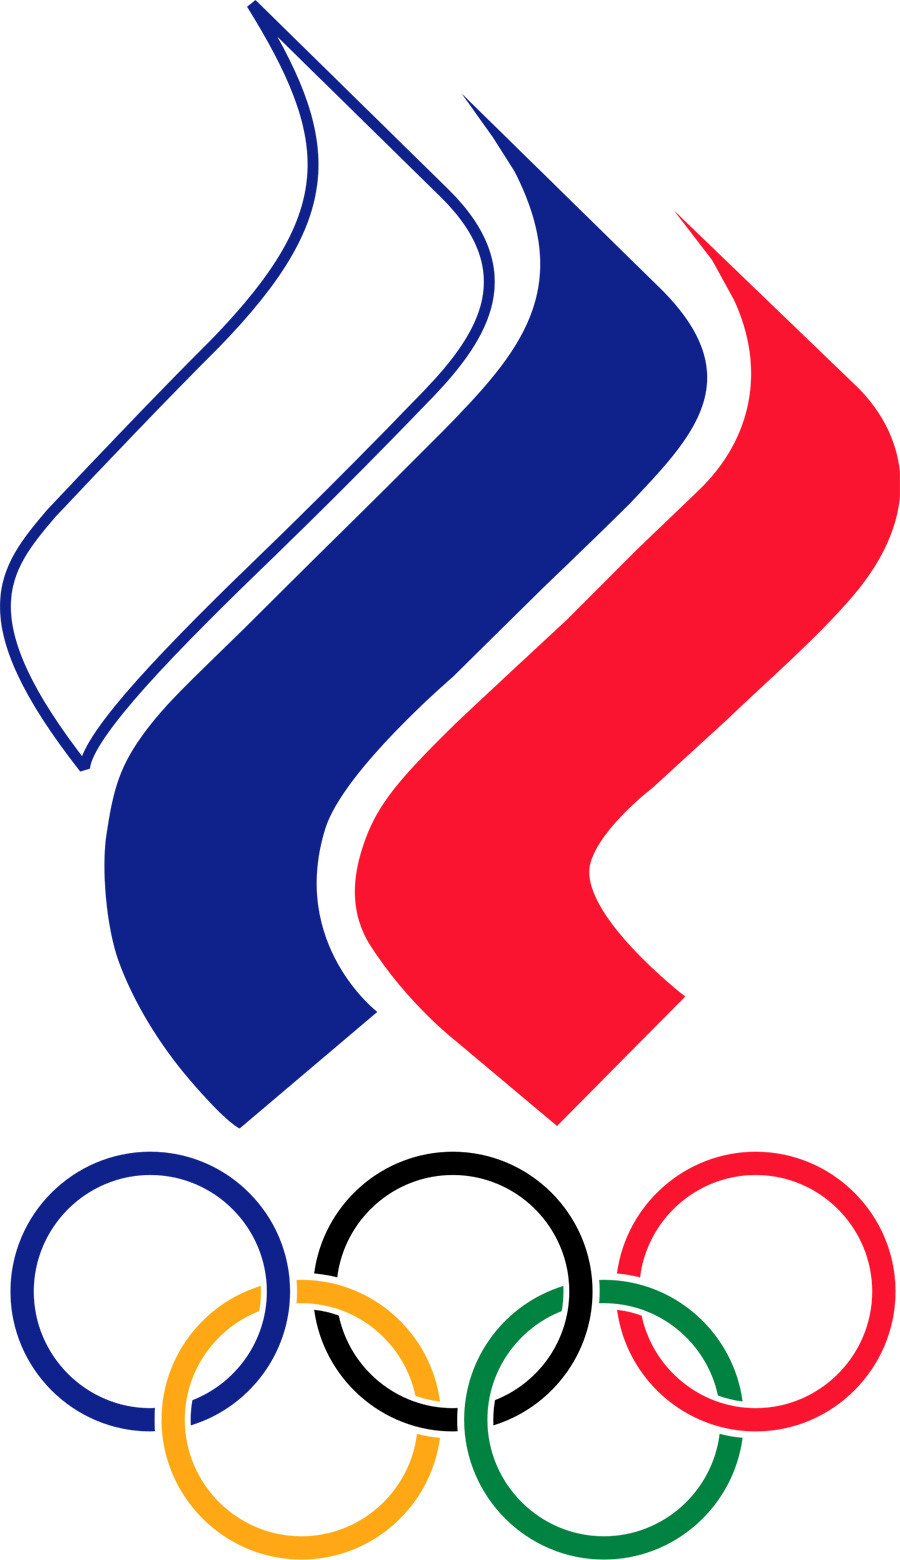 Emblème du Comité olympique russe